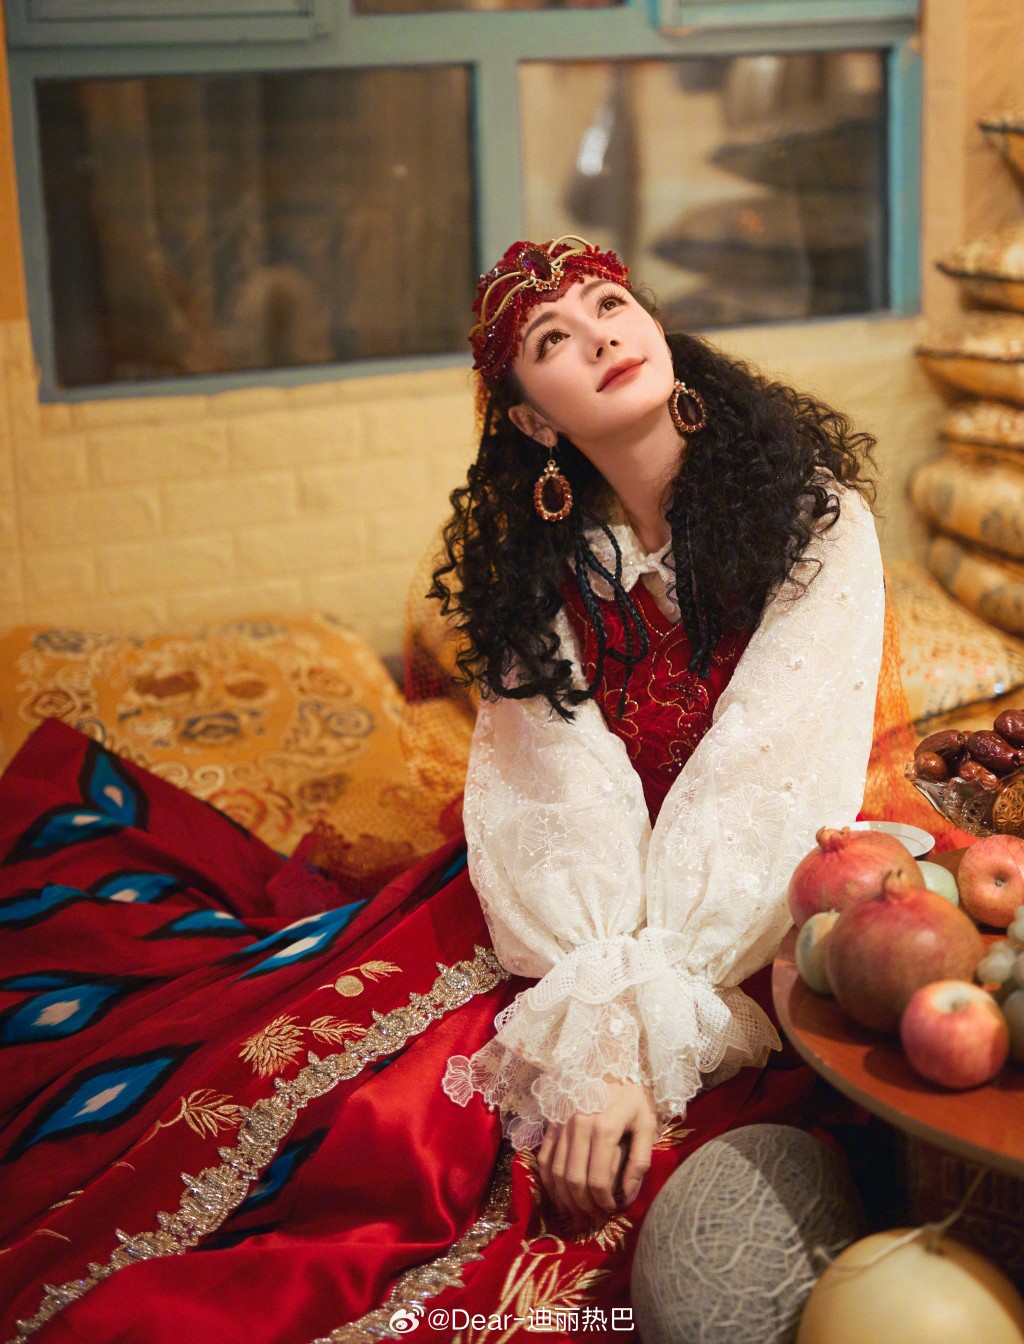 迪丽热巴公开穿维族表演服饰的美照。